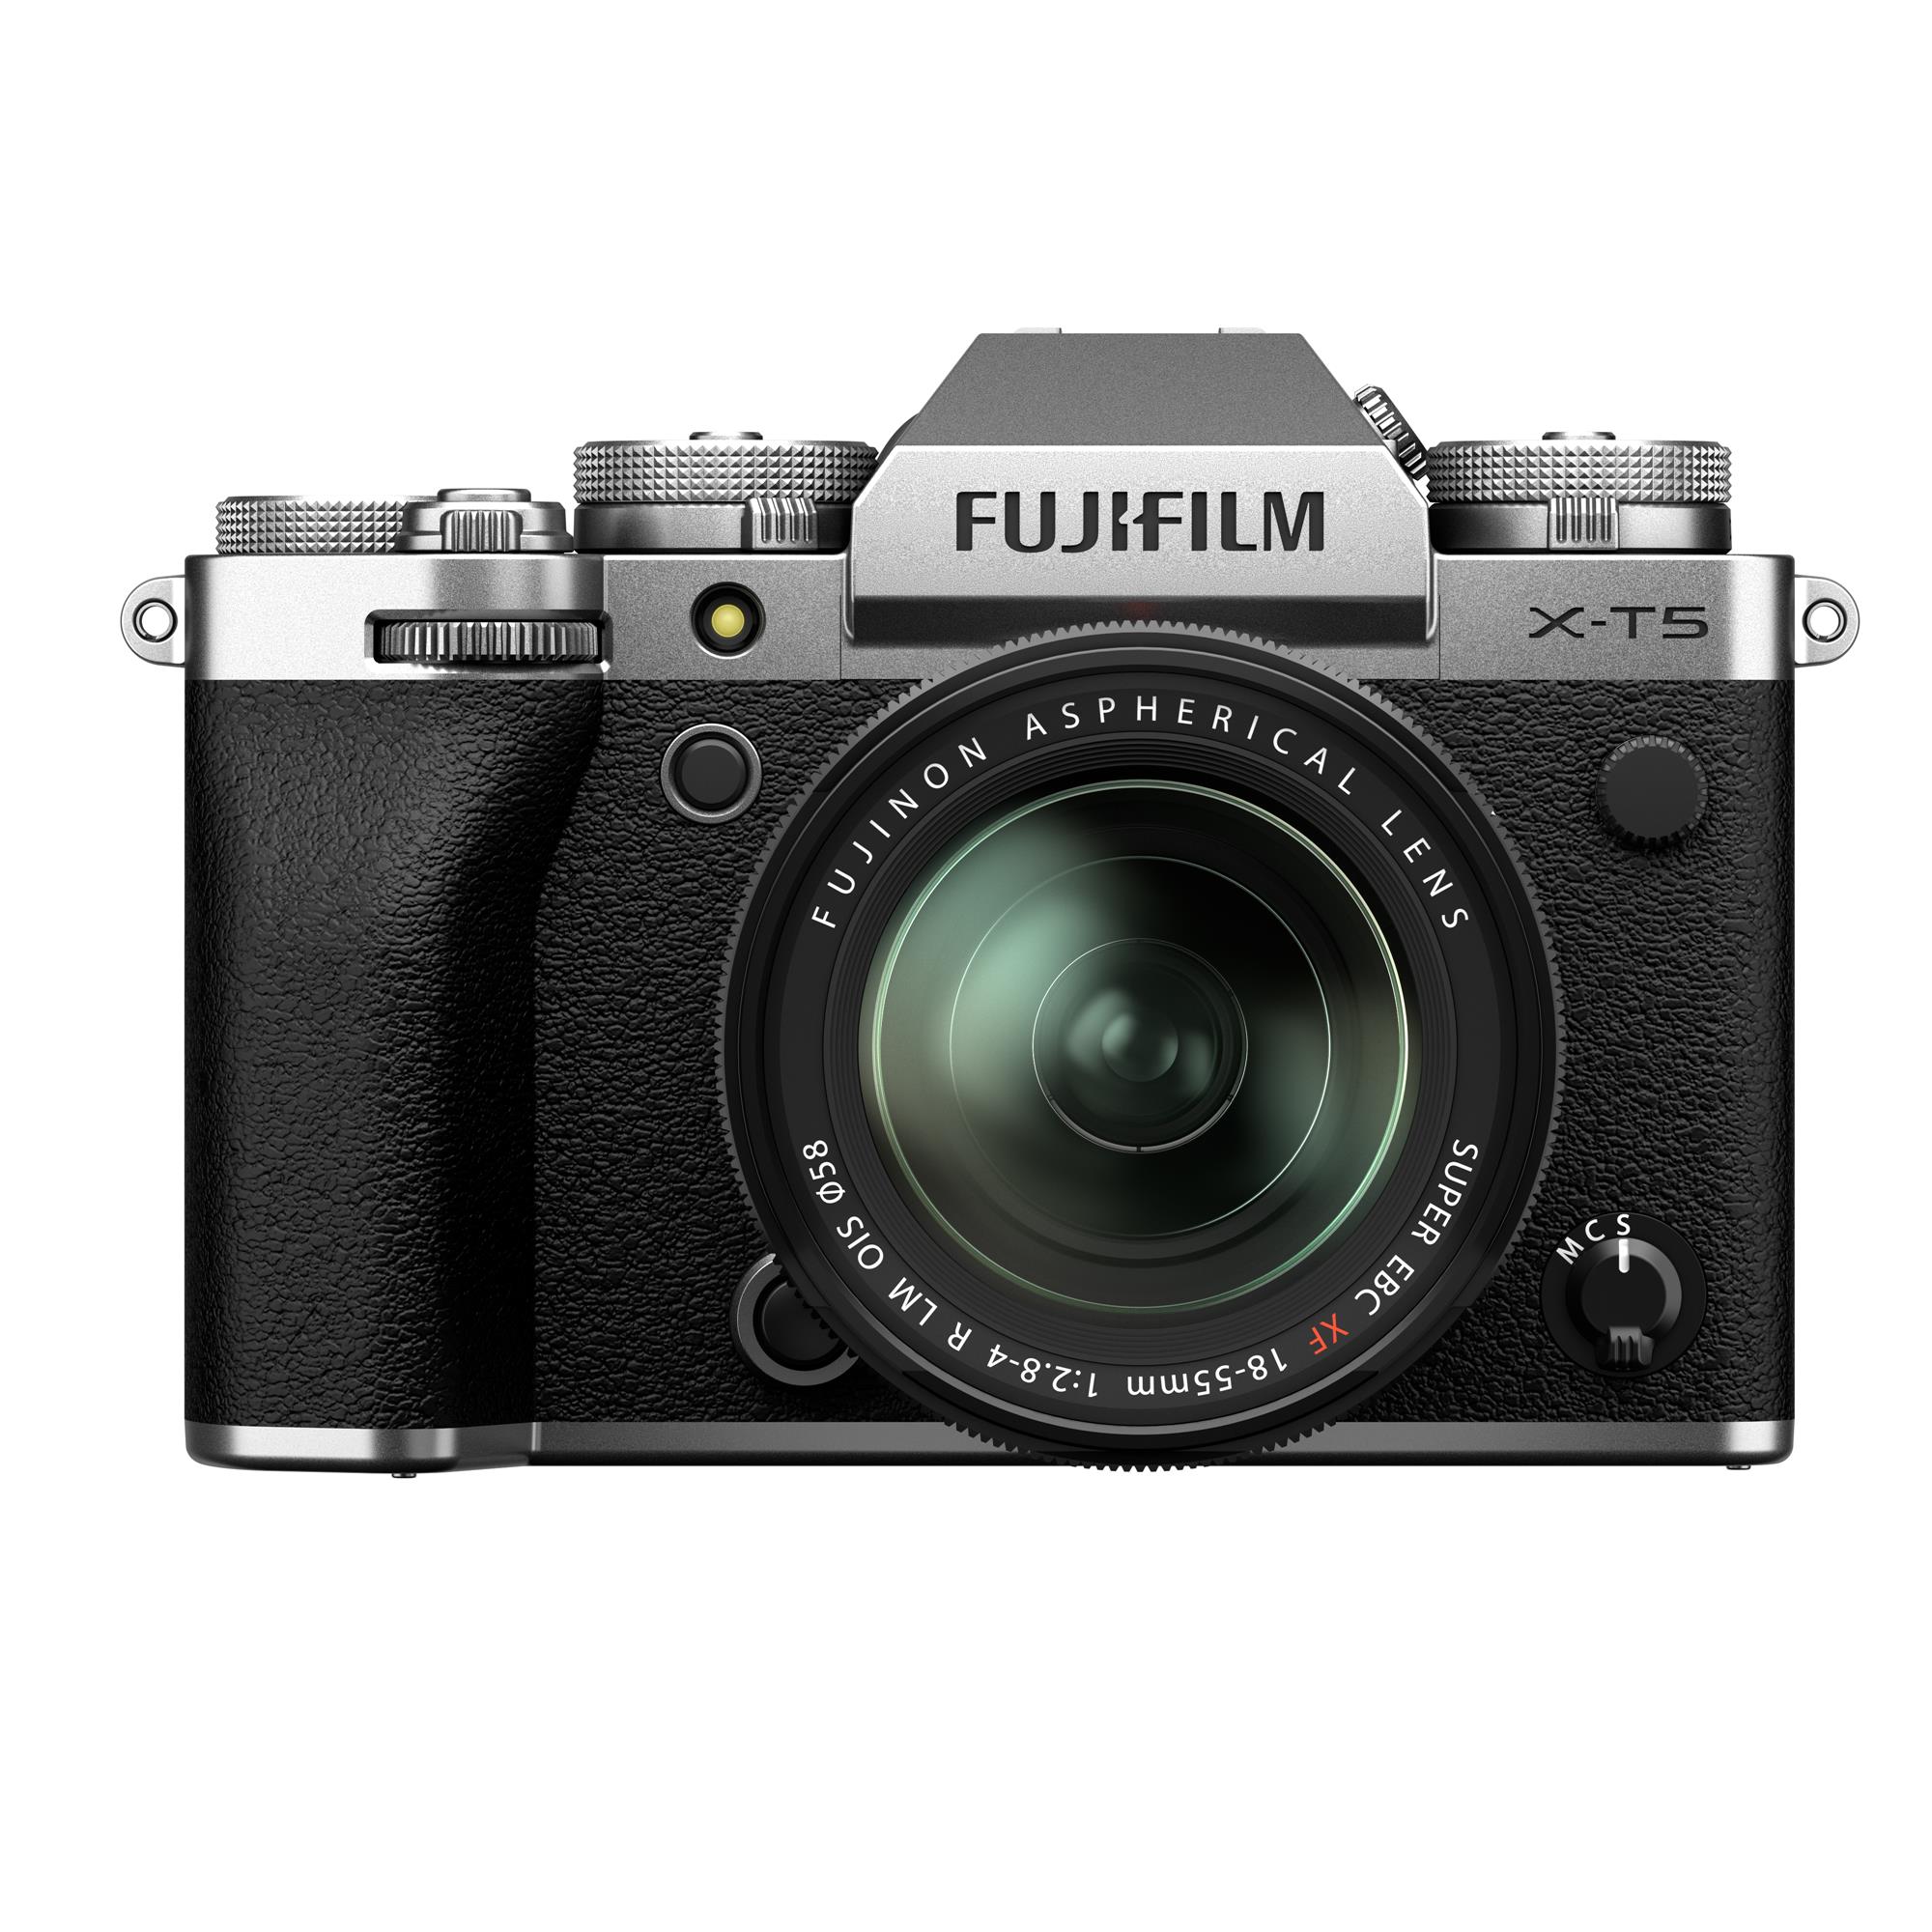 Fujifilm X-T5 Gehäuse silber + XF18-55mmF2.8-4 R LM OIS